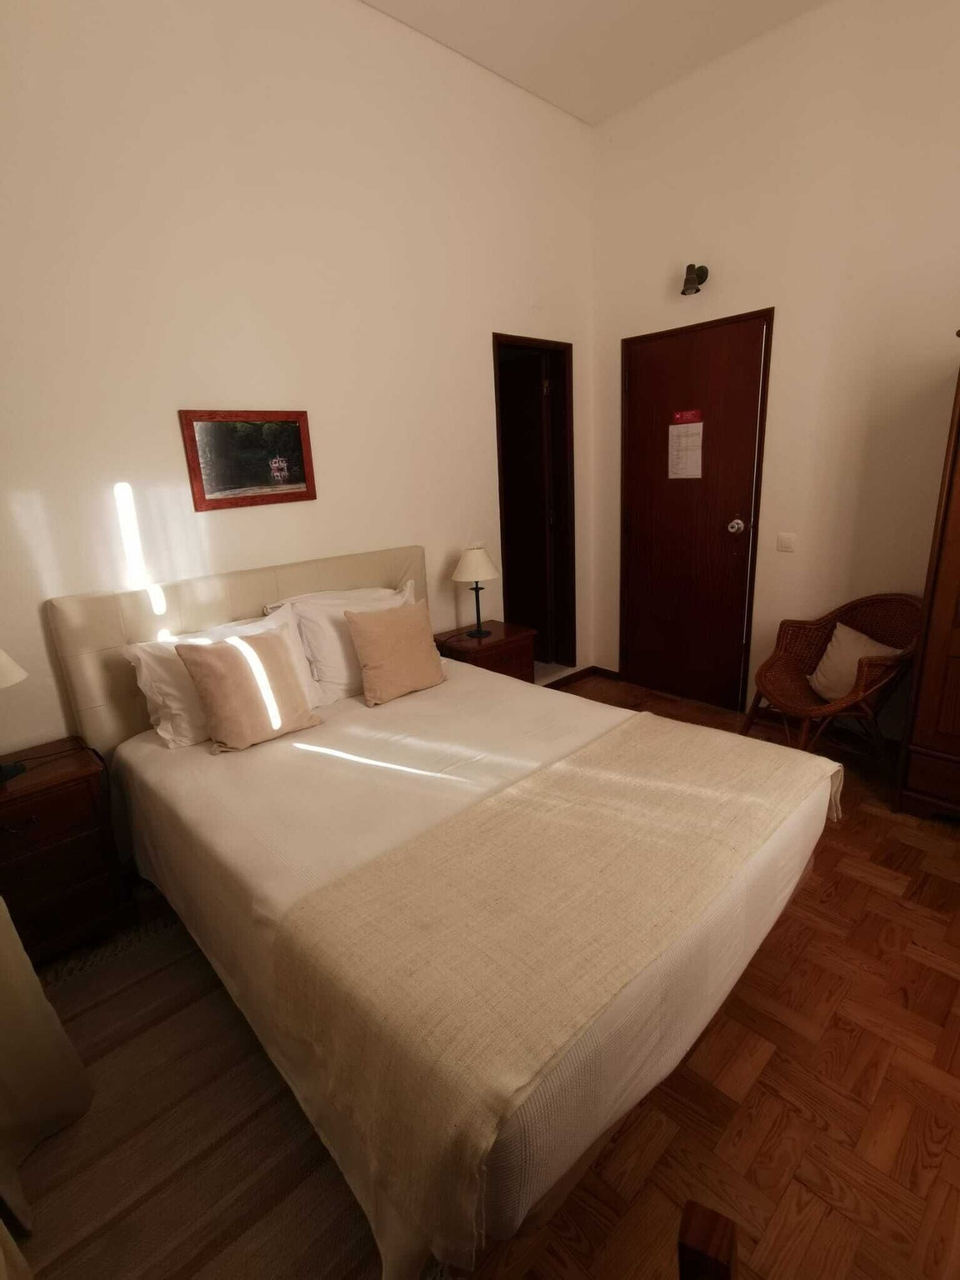 Bedroom 2, Beira Rio, Mértola